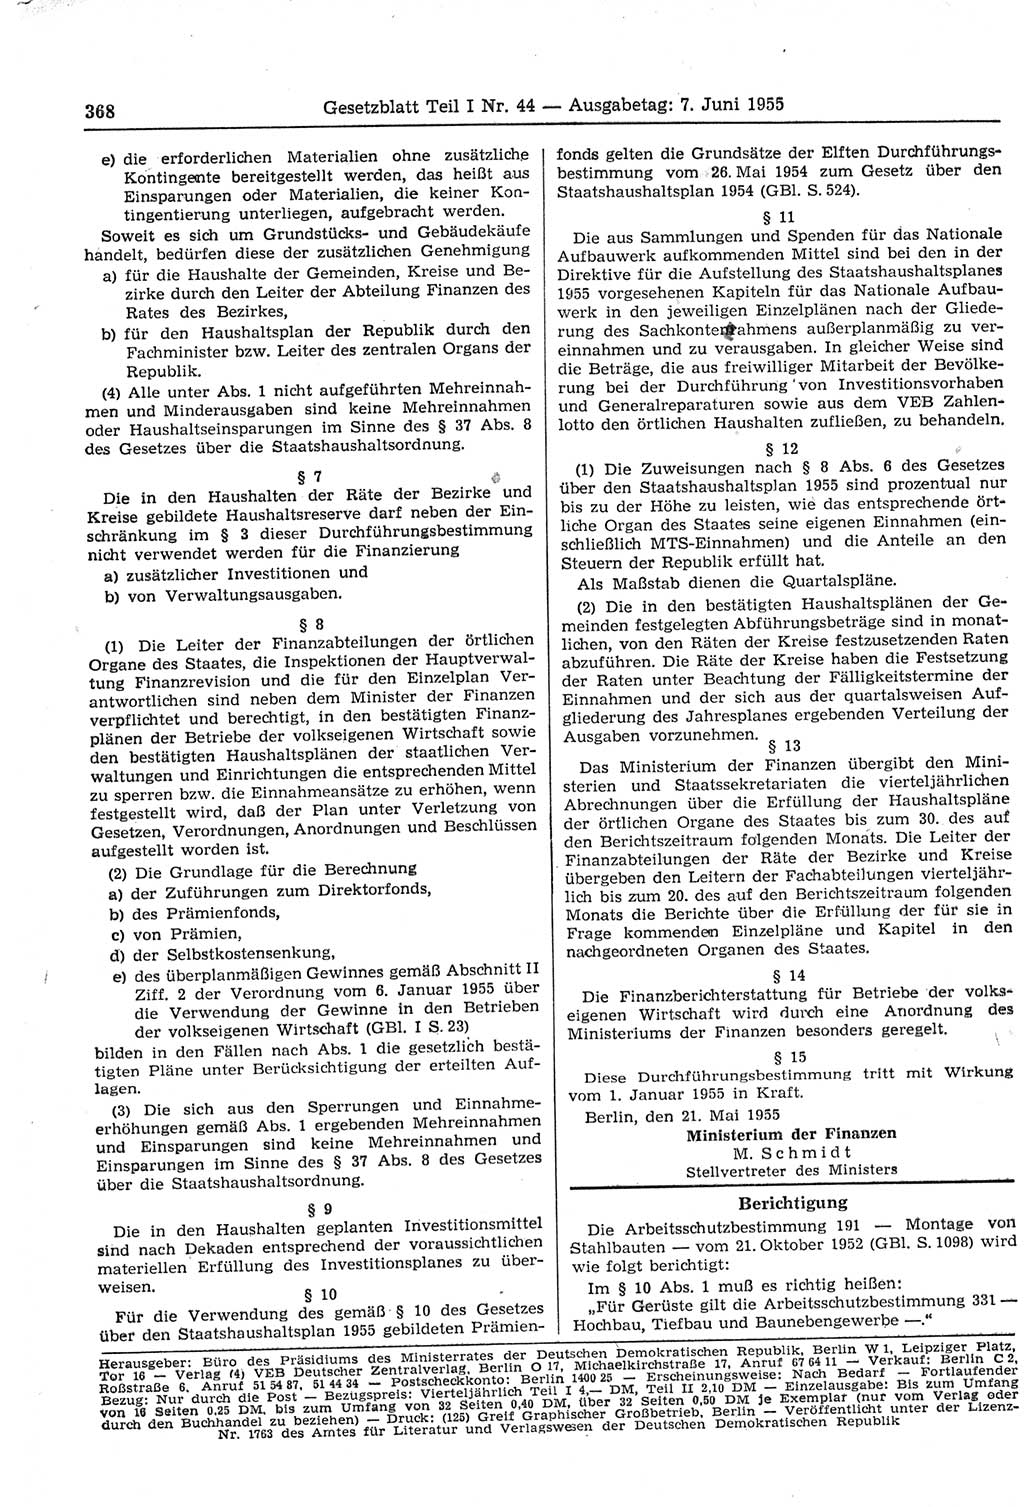 Gesetzblatt (GBl.) der Deutschen Demokratischen Republik (DDR) Teil Ⅰ 1955, Seite 368 (GBl. DDR Ⅰ 1955, S. 368)